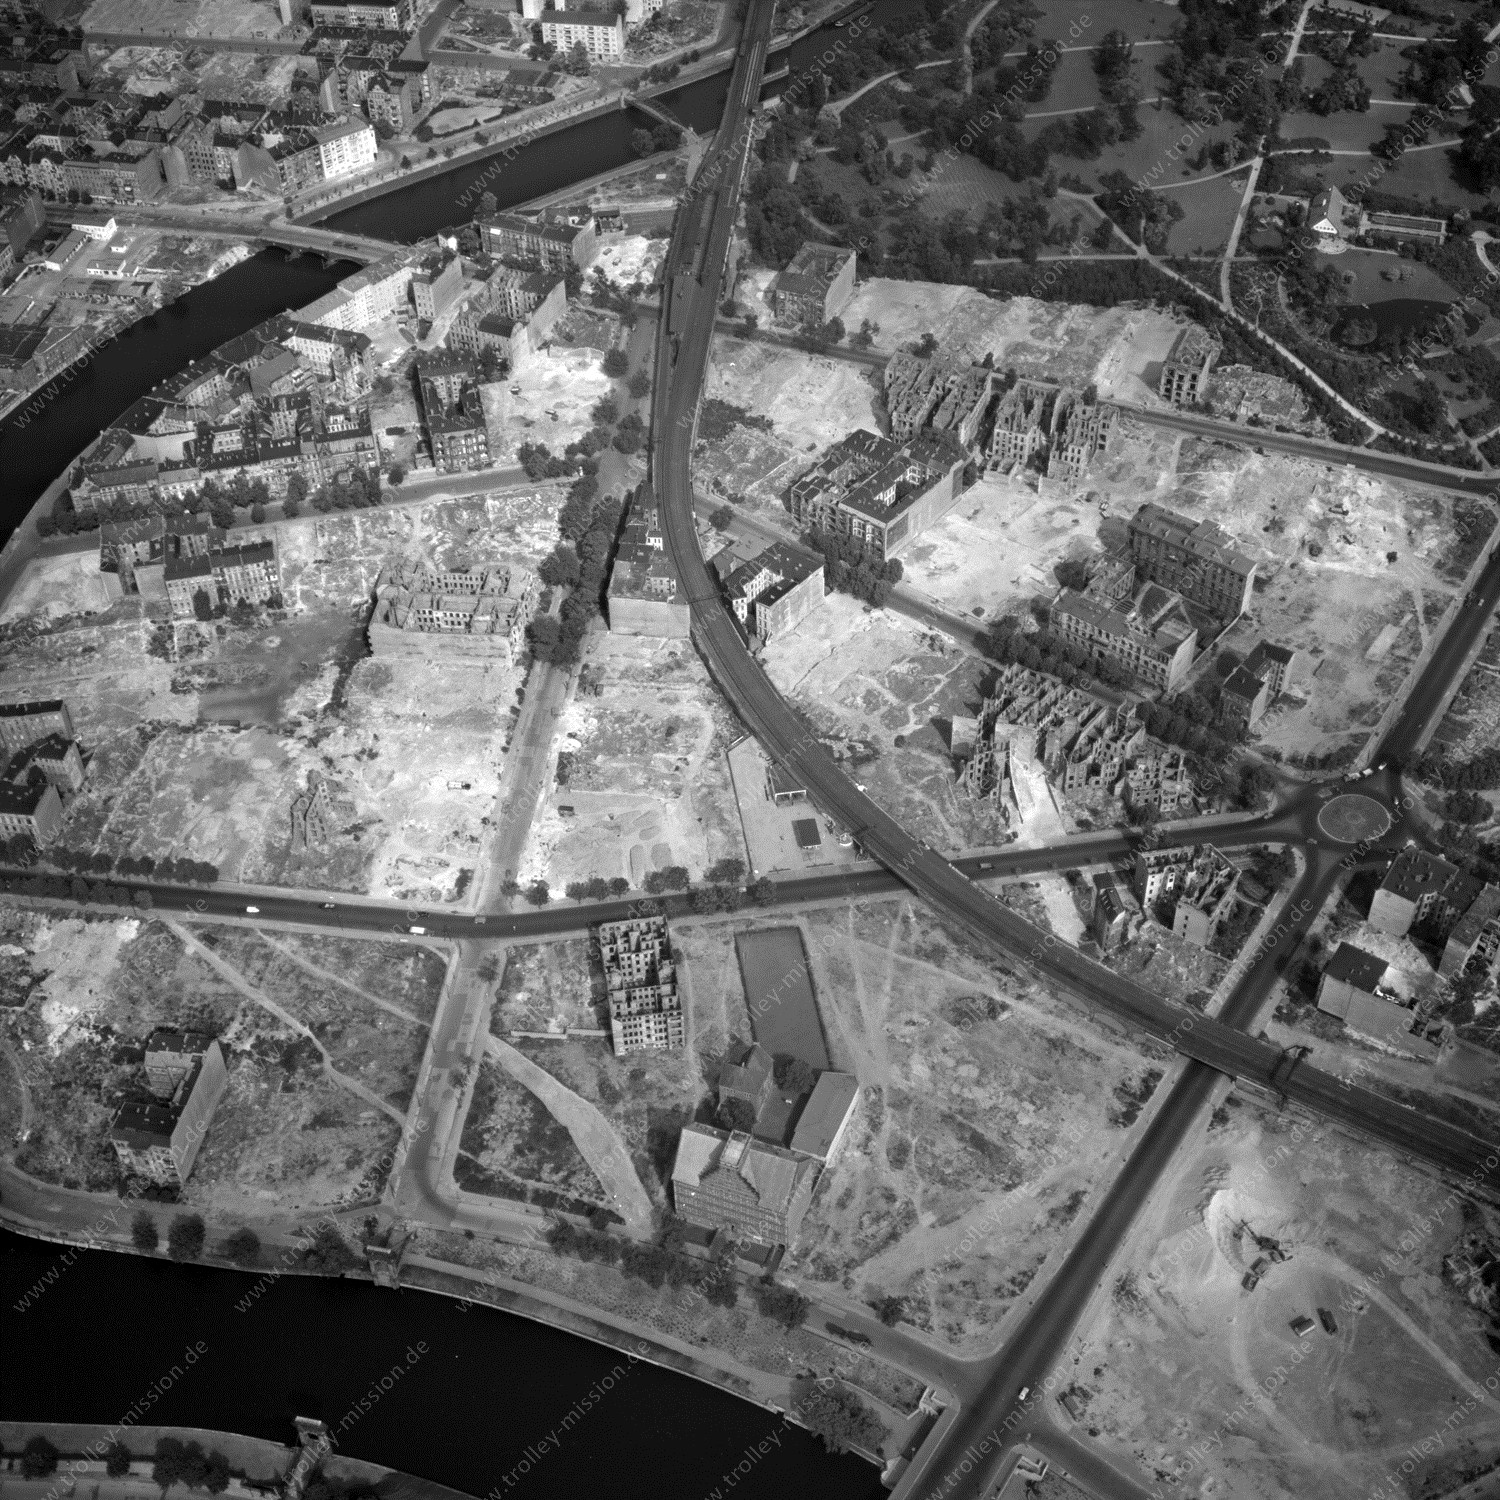 Alte Fotos und Luftbilder von Berlin - Luftbildaufnahme Nr. 06 - Historische Luftaufnahmen von West-Berlin aus dem Jahr 1954 - Flugstrecke Victor